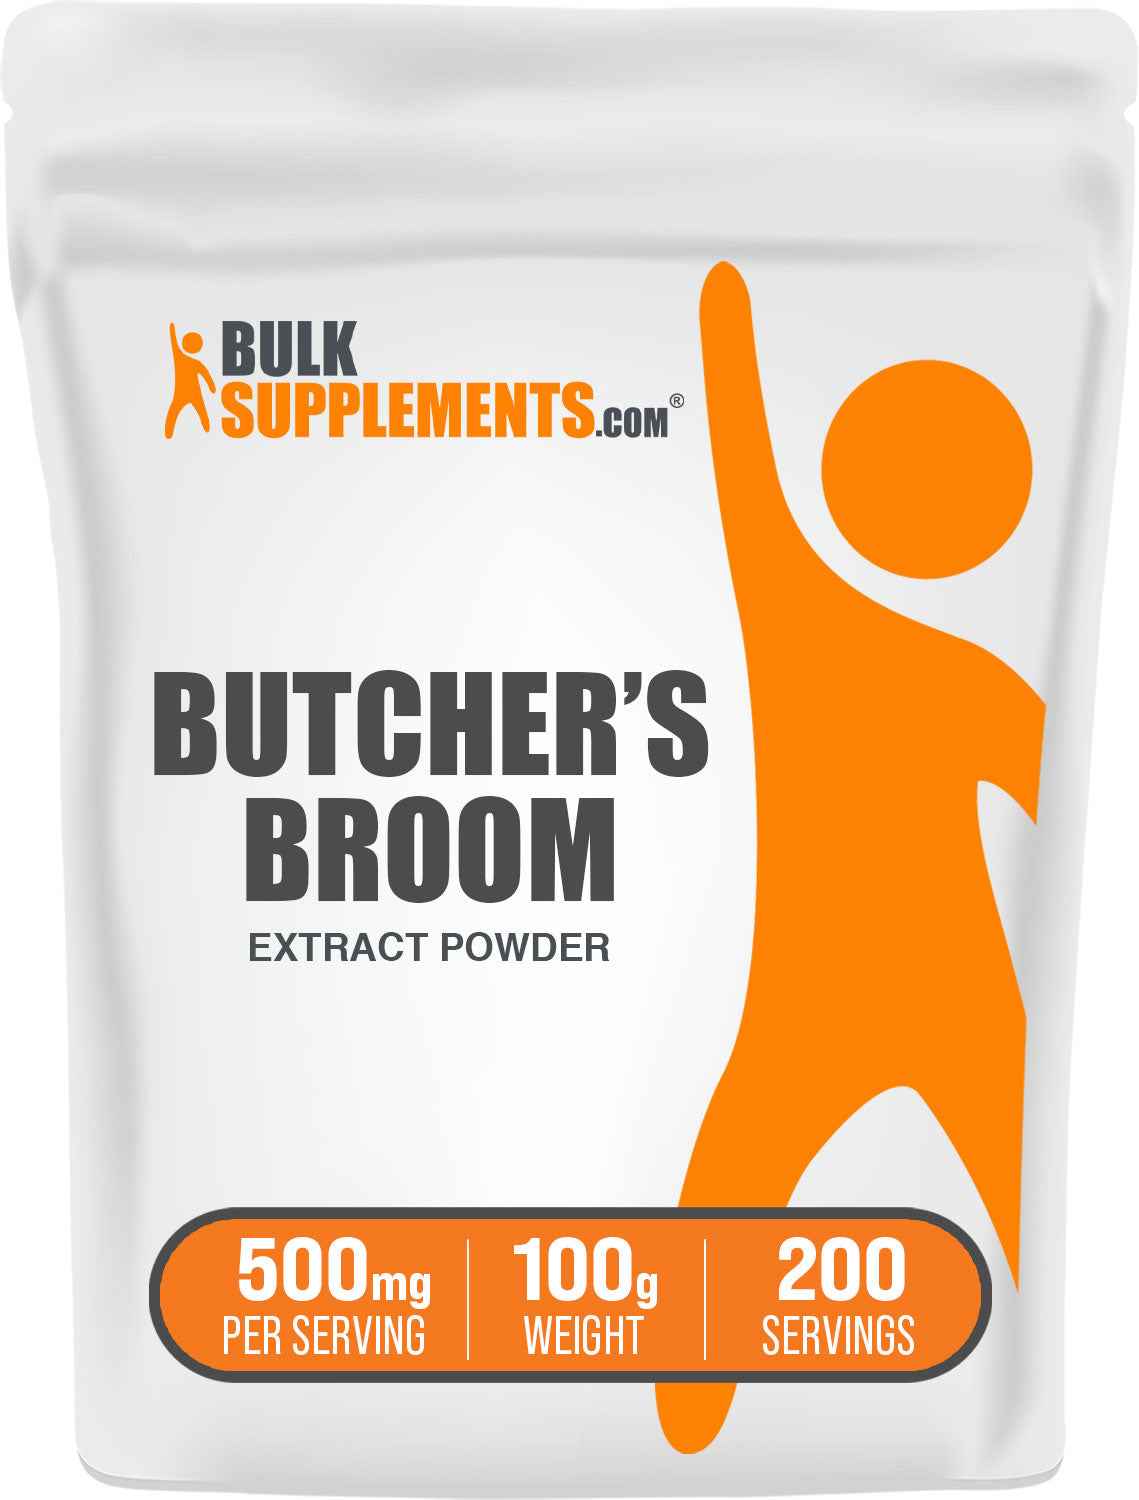 100g of butchers broom